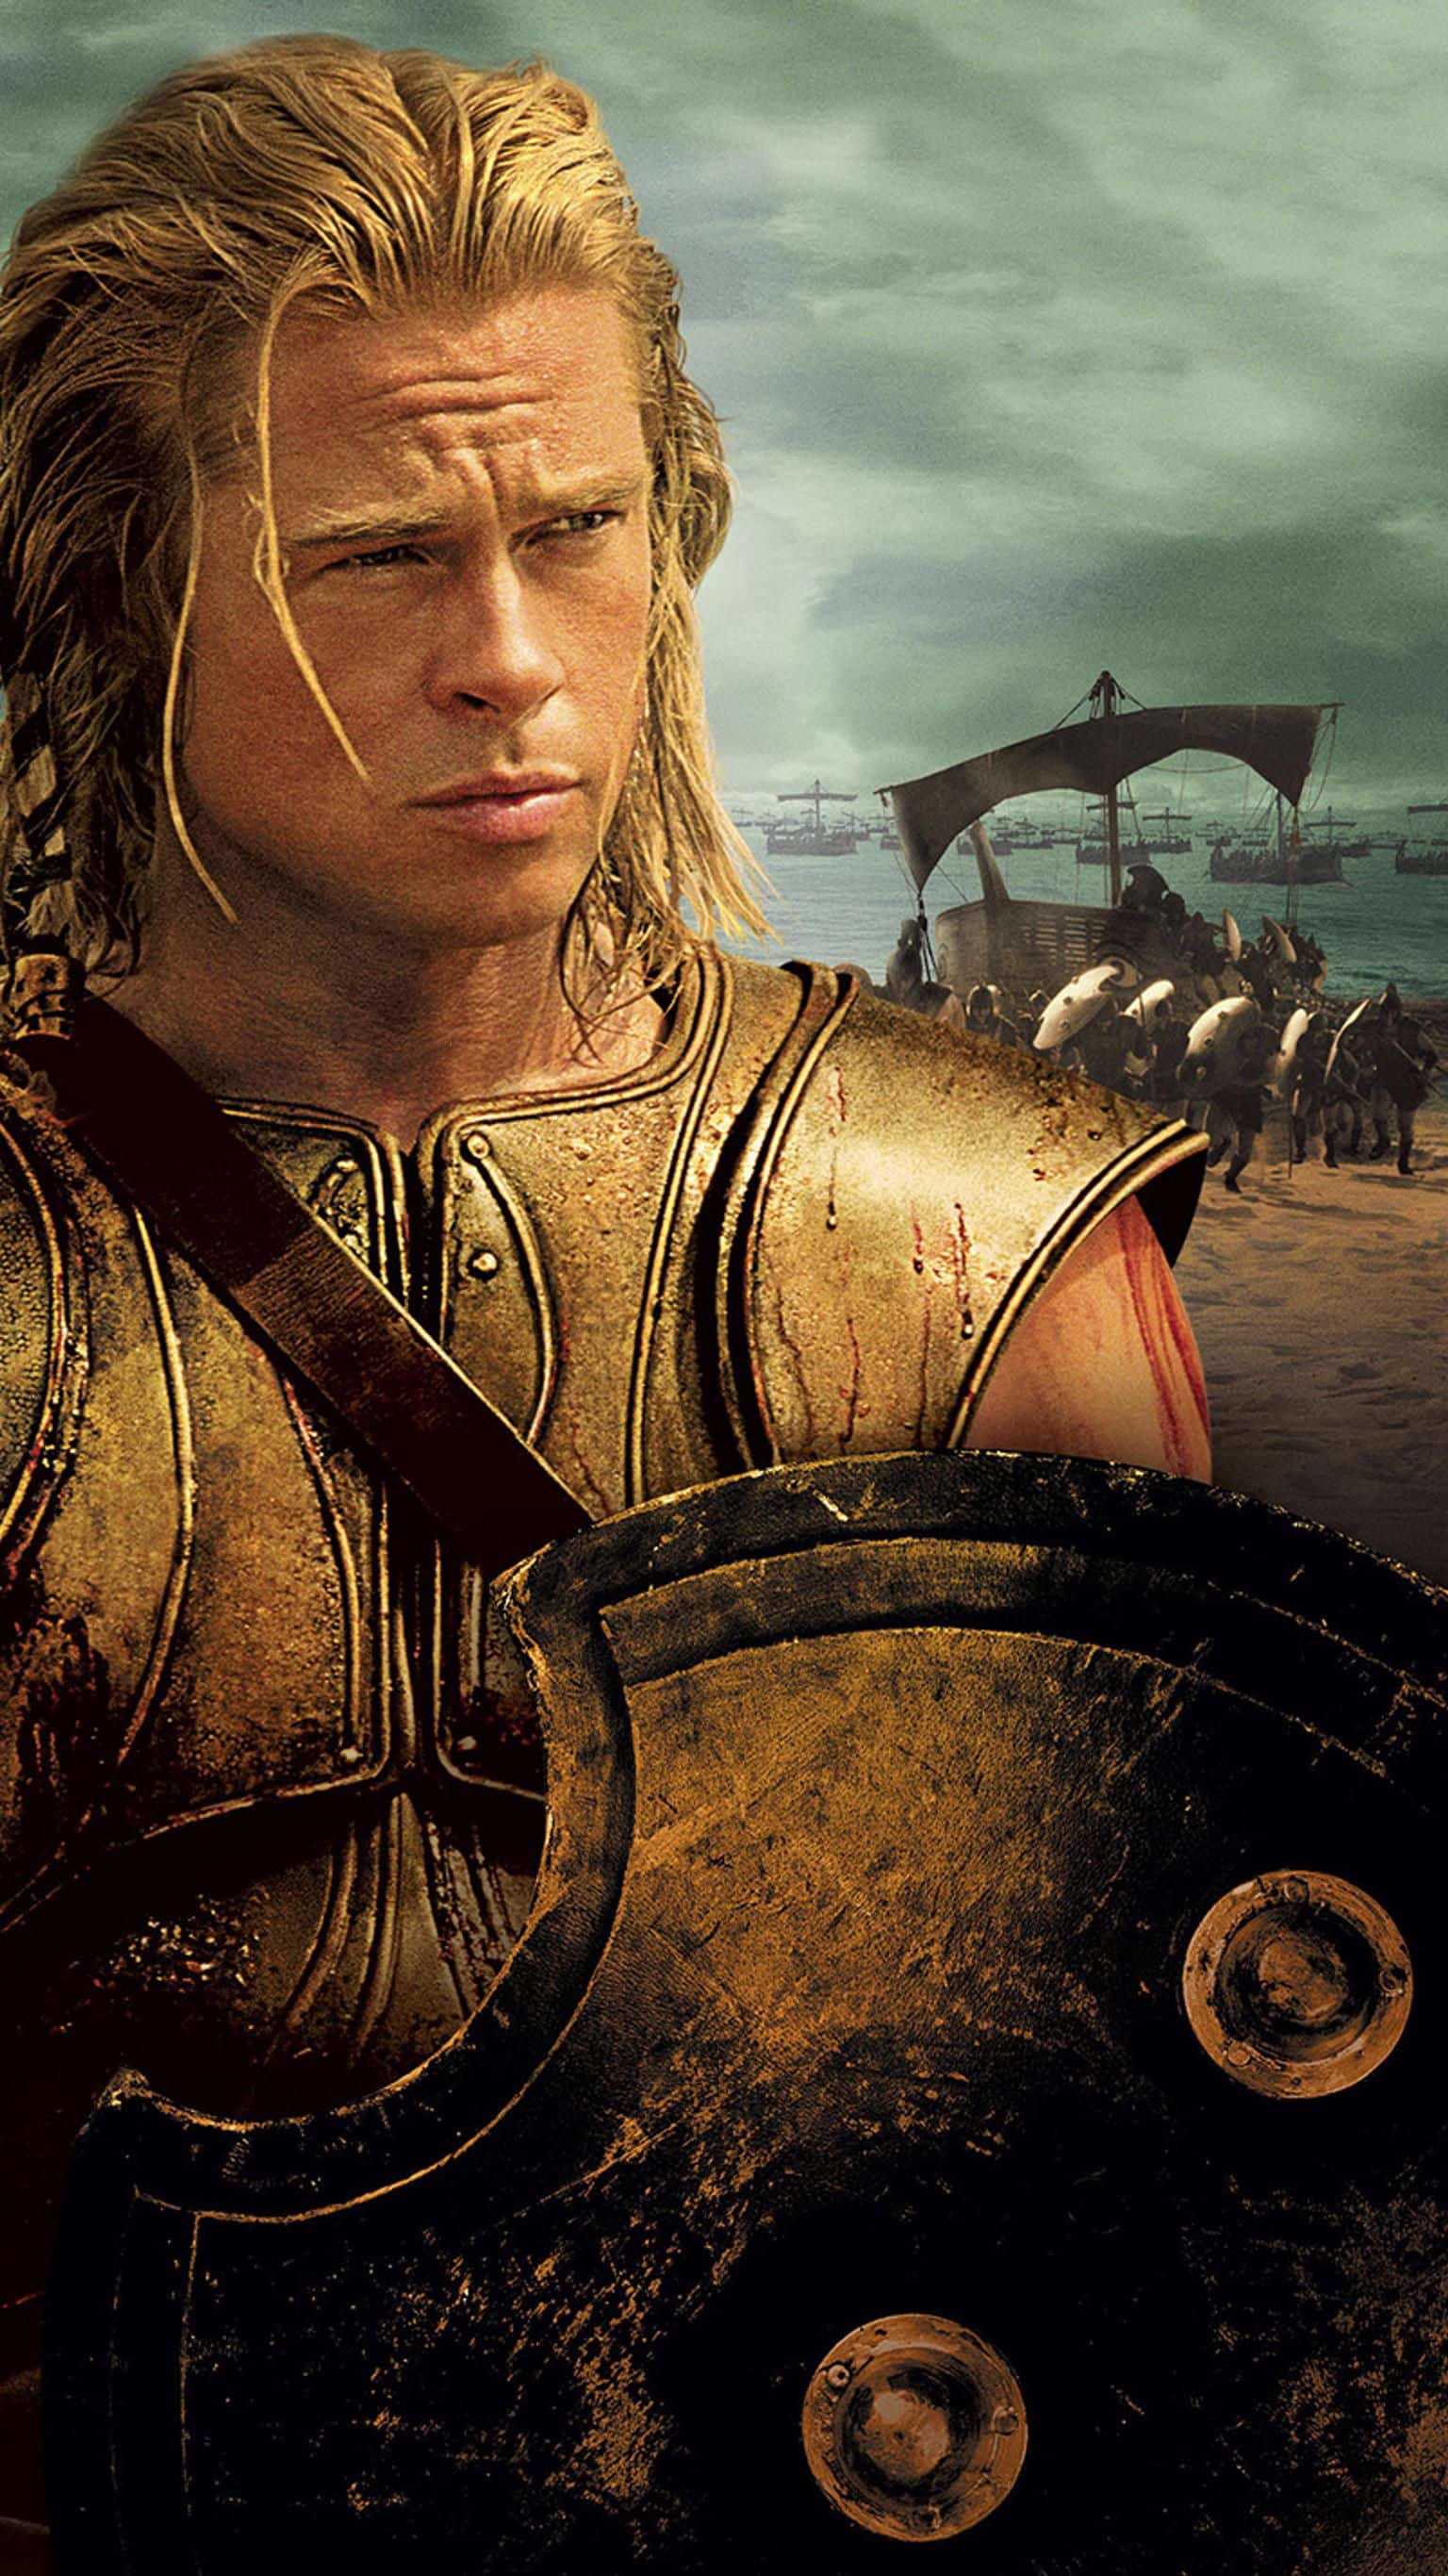 Achilles góp phần không nhỏ khi giành lại chiến thắng vẻ vang cho Sparta trong cuộc chiến thành Troy